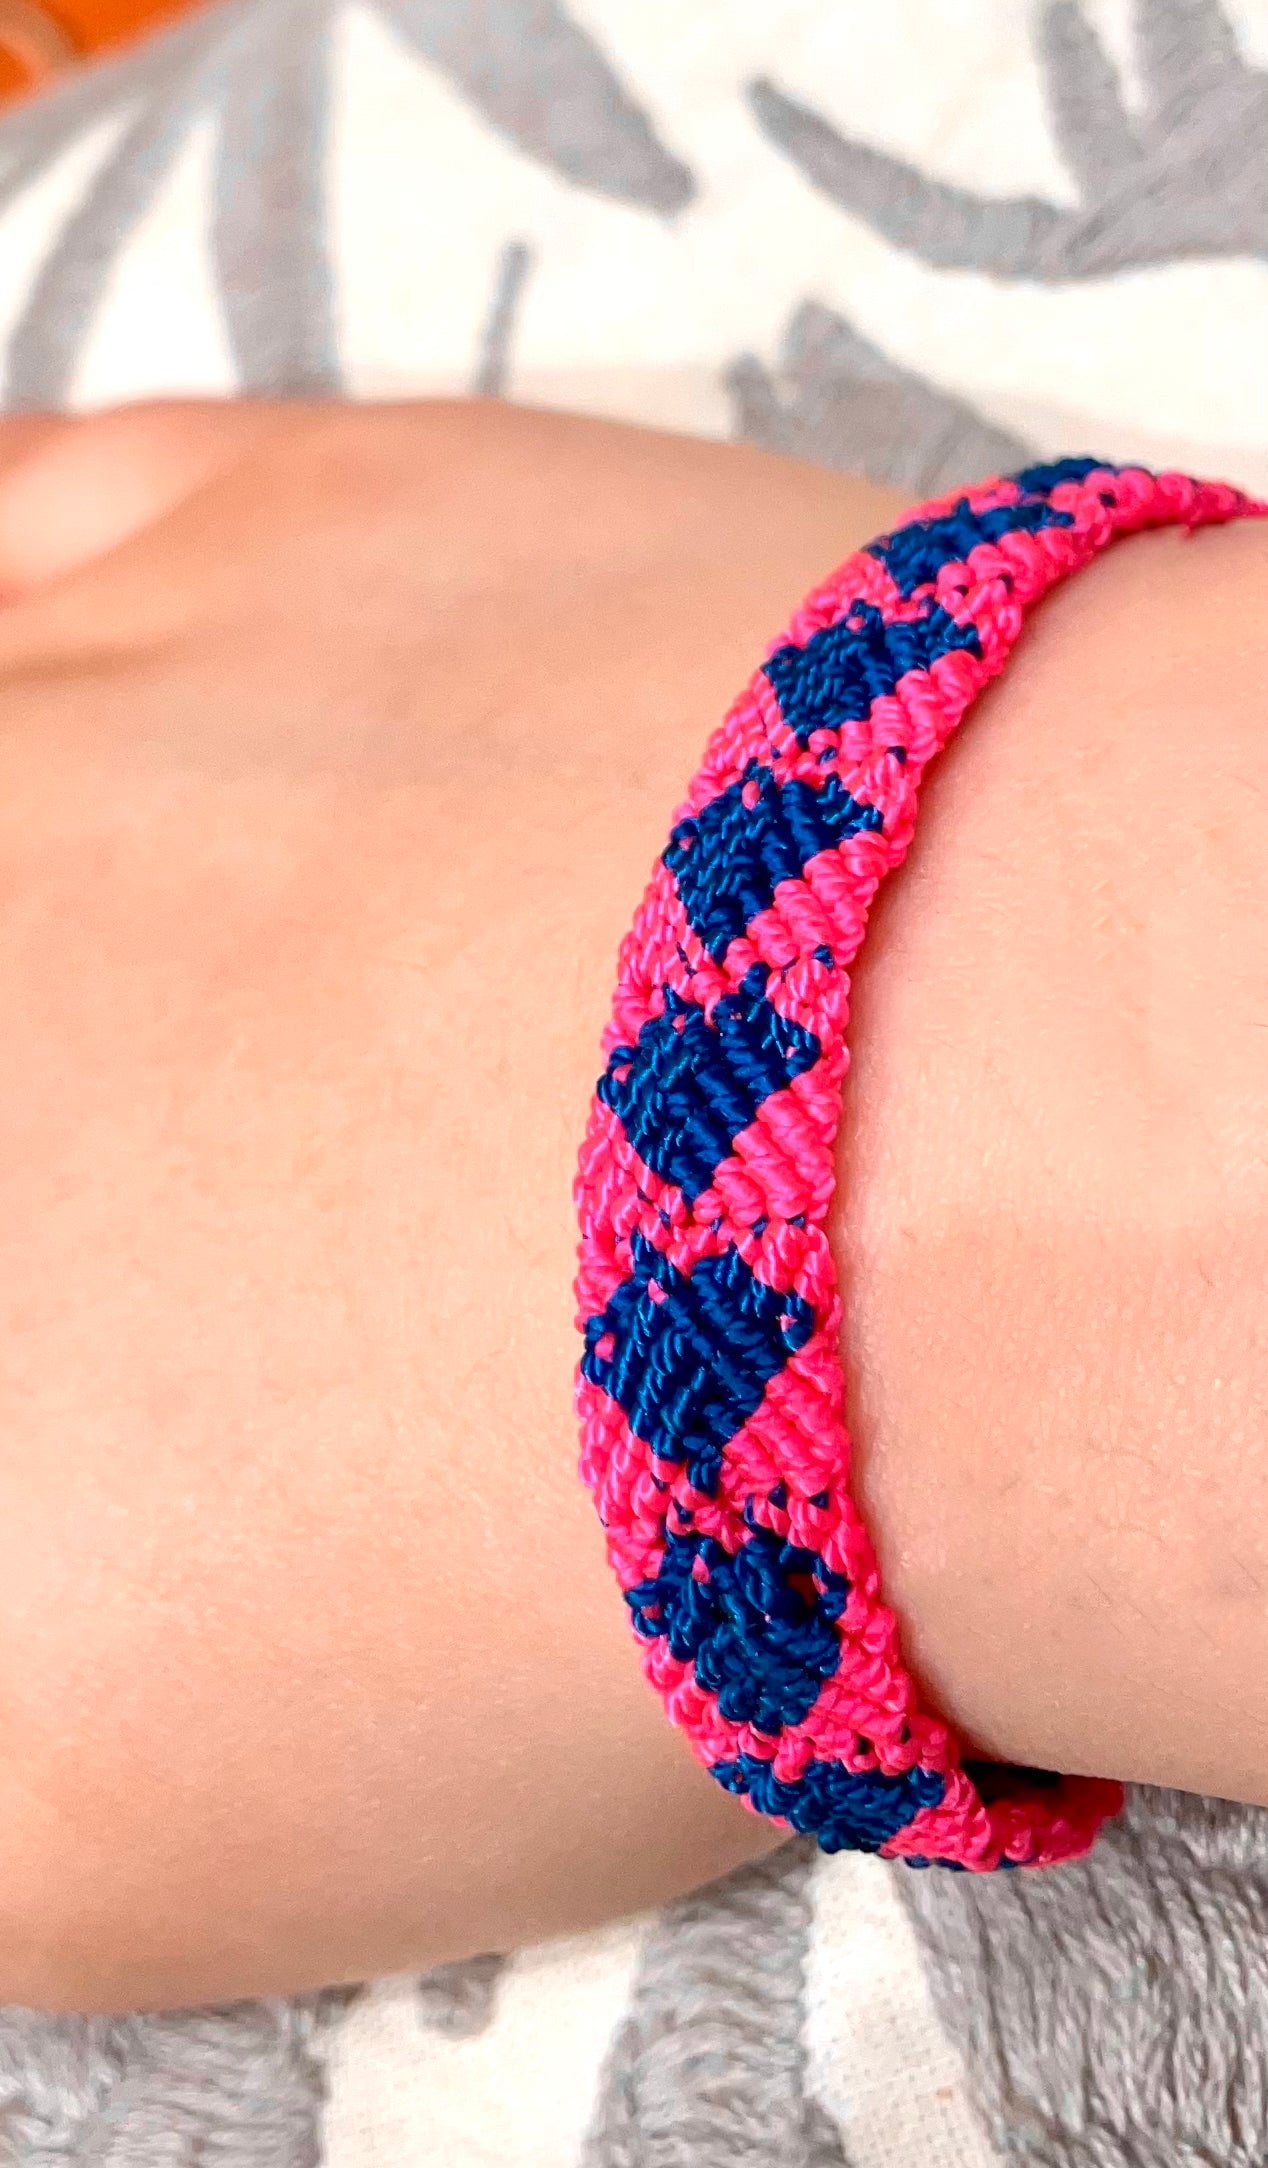 Handwoven Friendship Bracelets -- Chiapas, Mexico